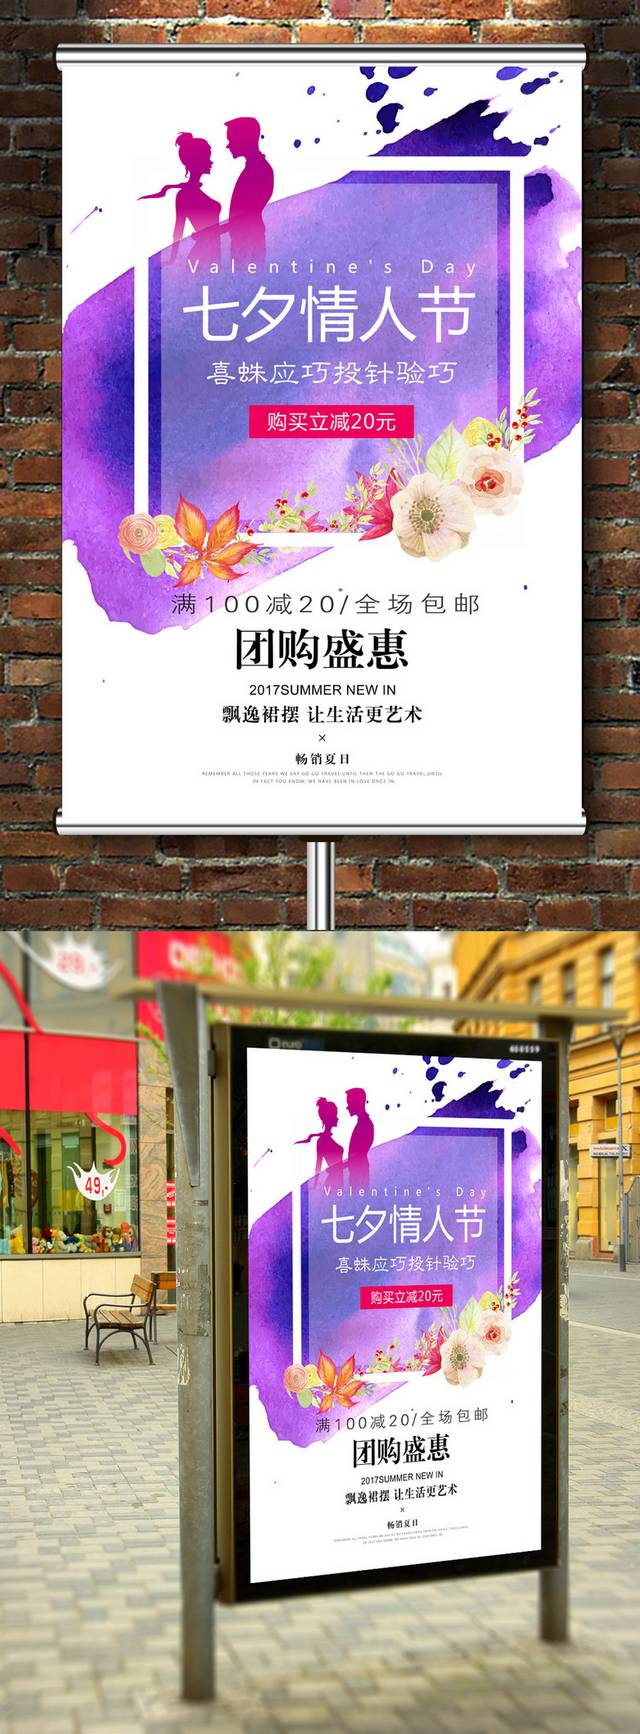 紫色浪漫七夕节海报模板